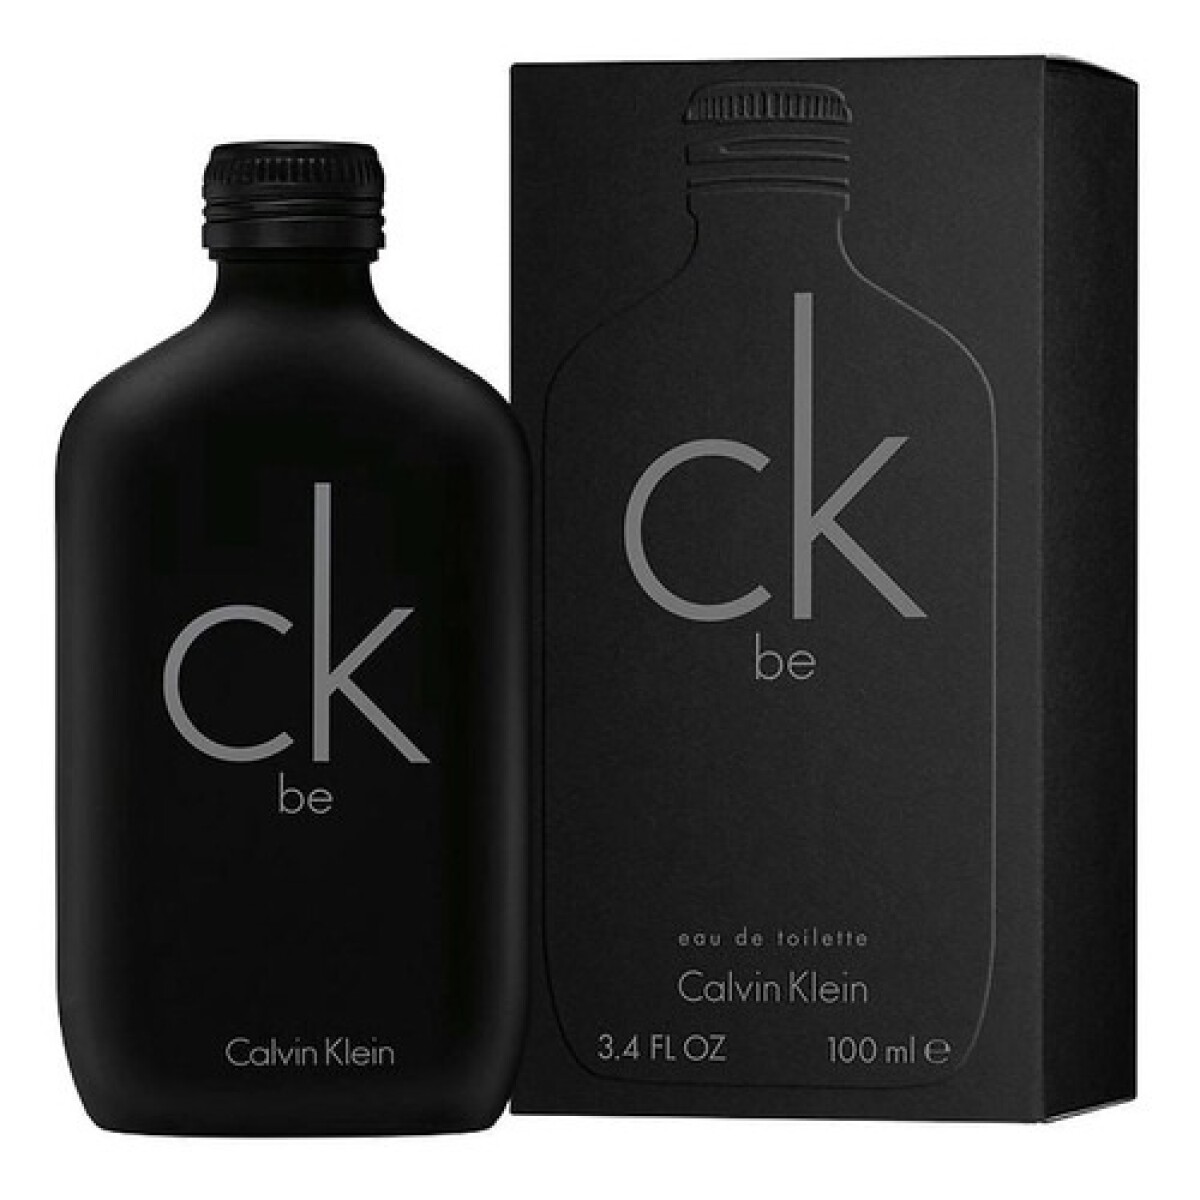 Perfume Ck Be Edt Calvin Klein 100 Ml. 